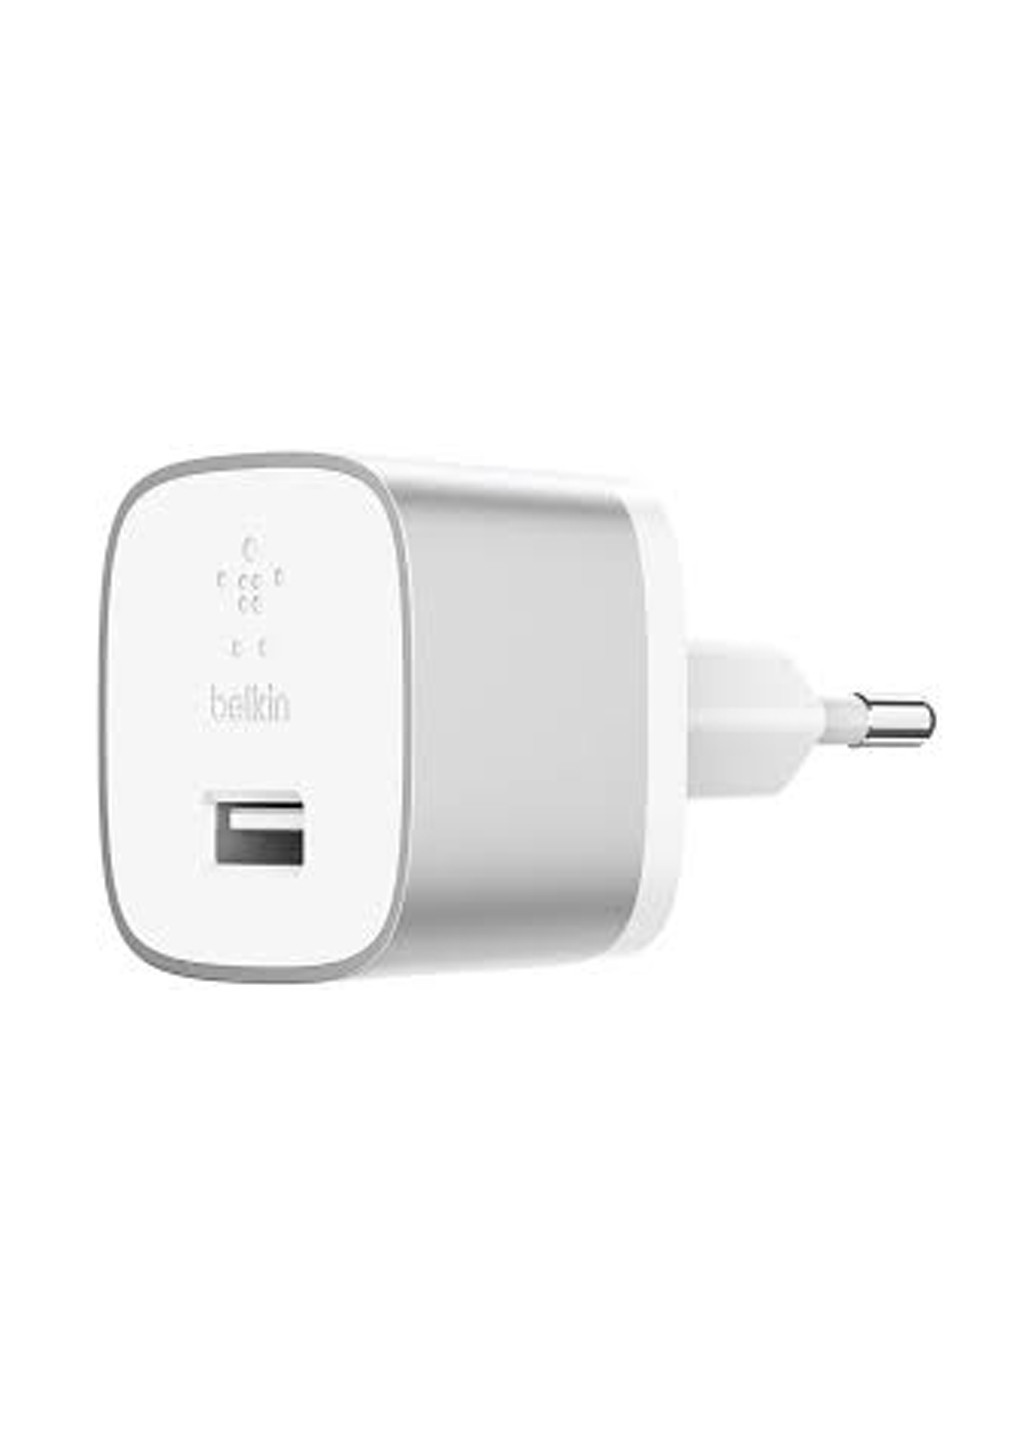 Сетевое ЗУ Belkin USB-3.0 Quick Charge™ with USB-A to USB-C™ Cable 1.2m, 18W, Silver (F7U034VF04-SLV) серебристое